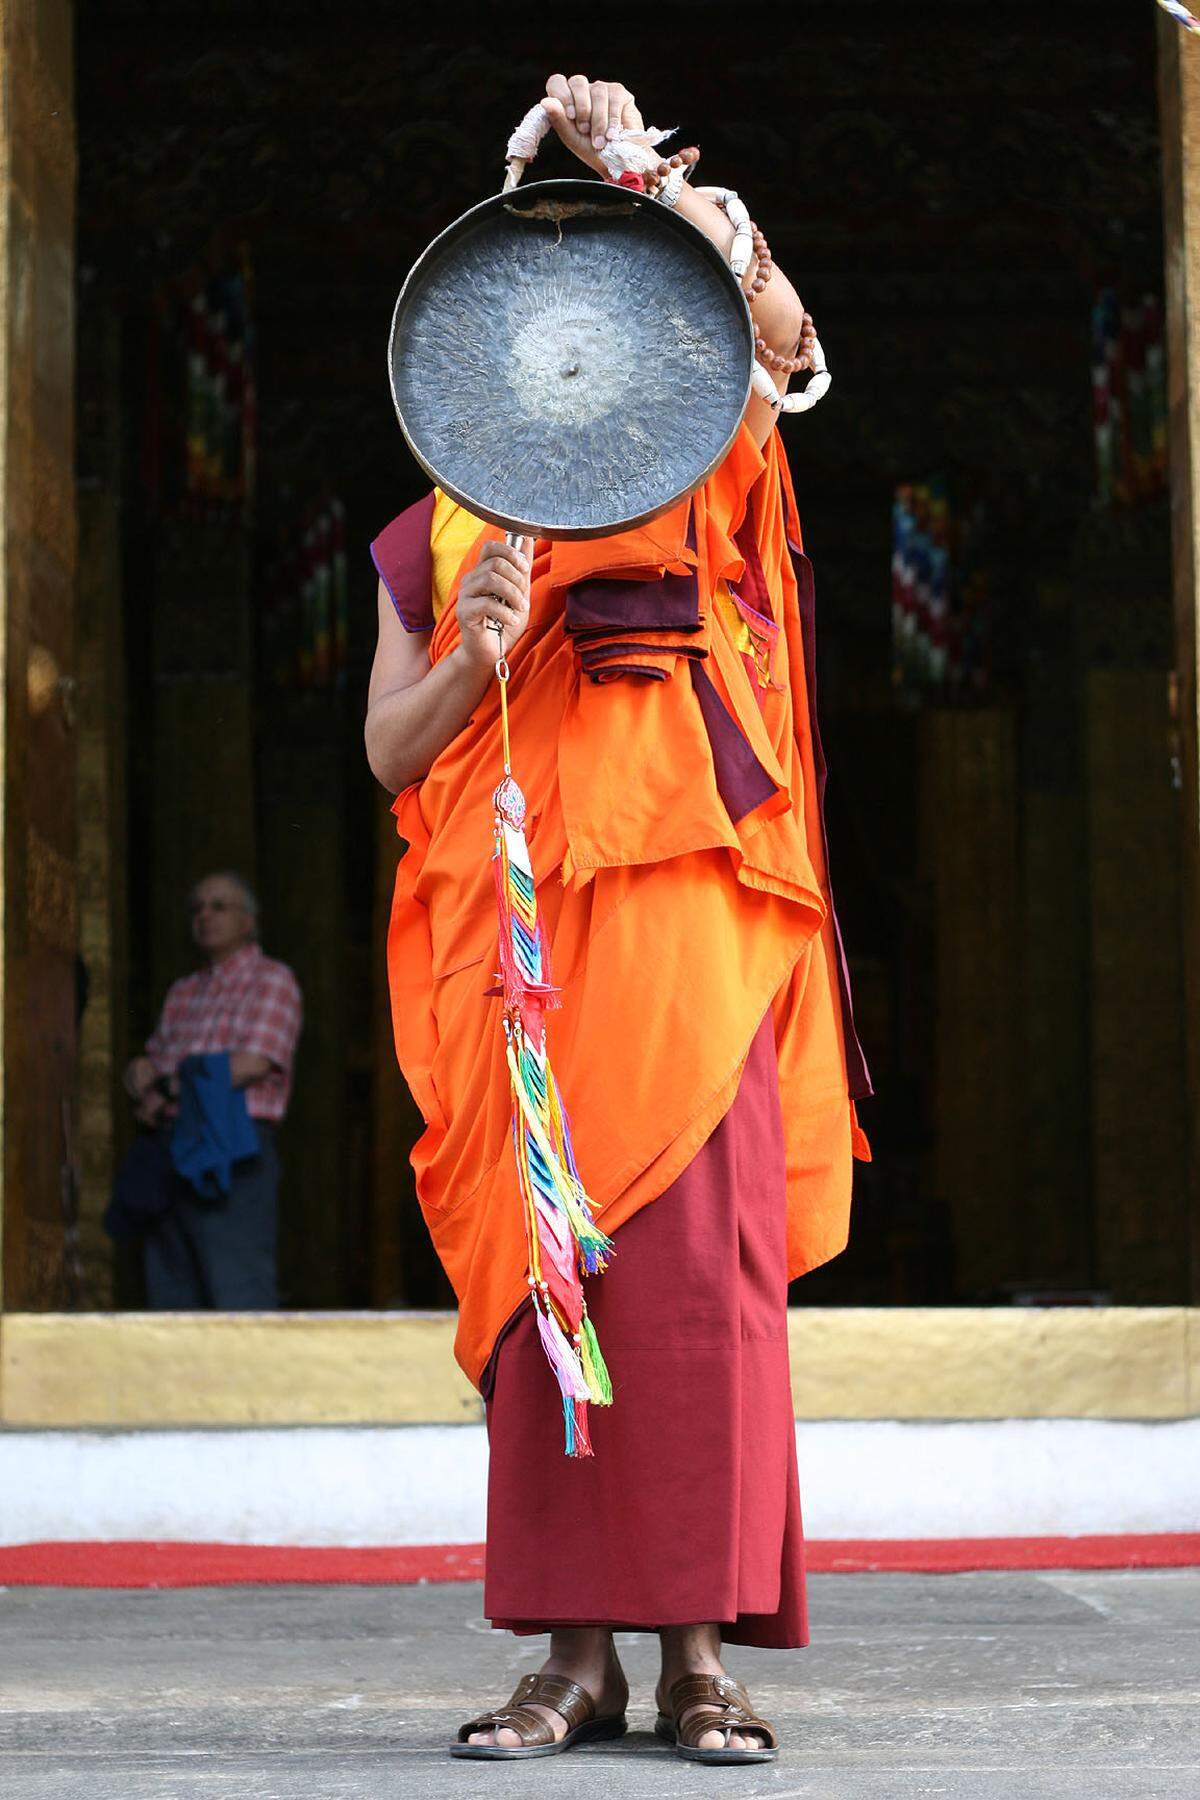 Ein Mönch in der traditionellen orange-roten Robe schlägt im Dzong von Punakha einen Gong. Bhutan ist ein großteils buddhistisches Land, die Religion ist auch in der Politik ein wichtiger Faktor.